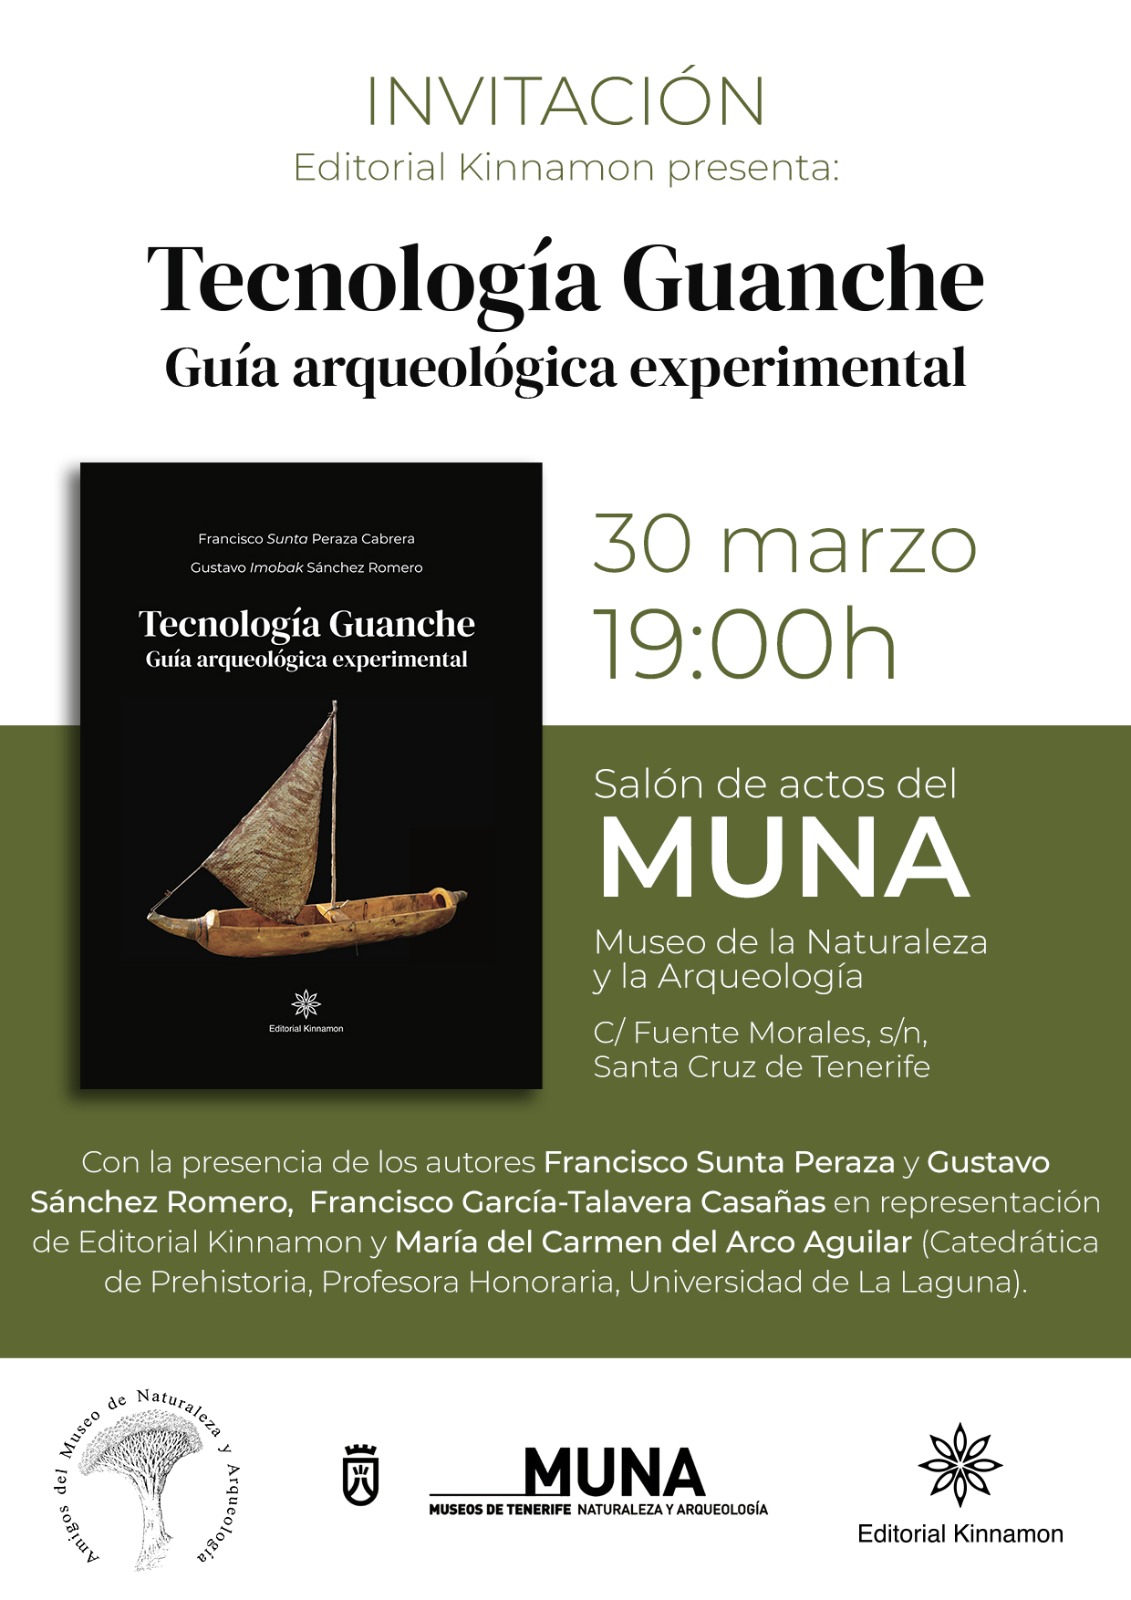 Invitación para la presentación del libro Tecnología Guanche